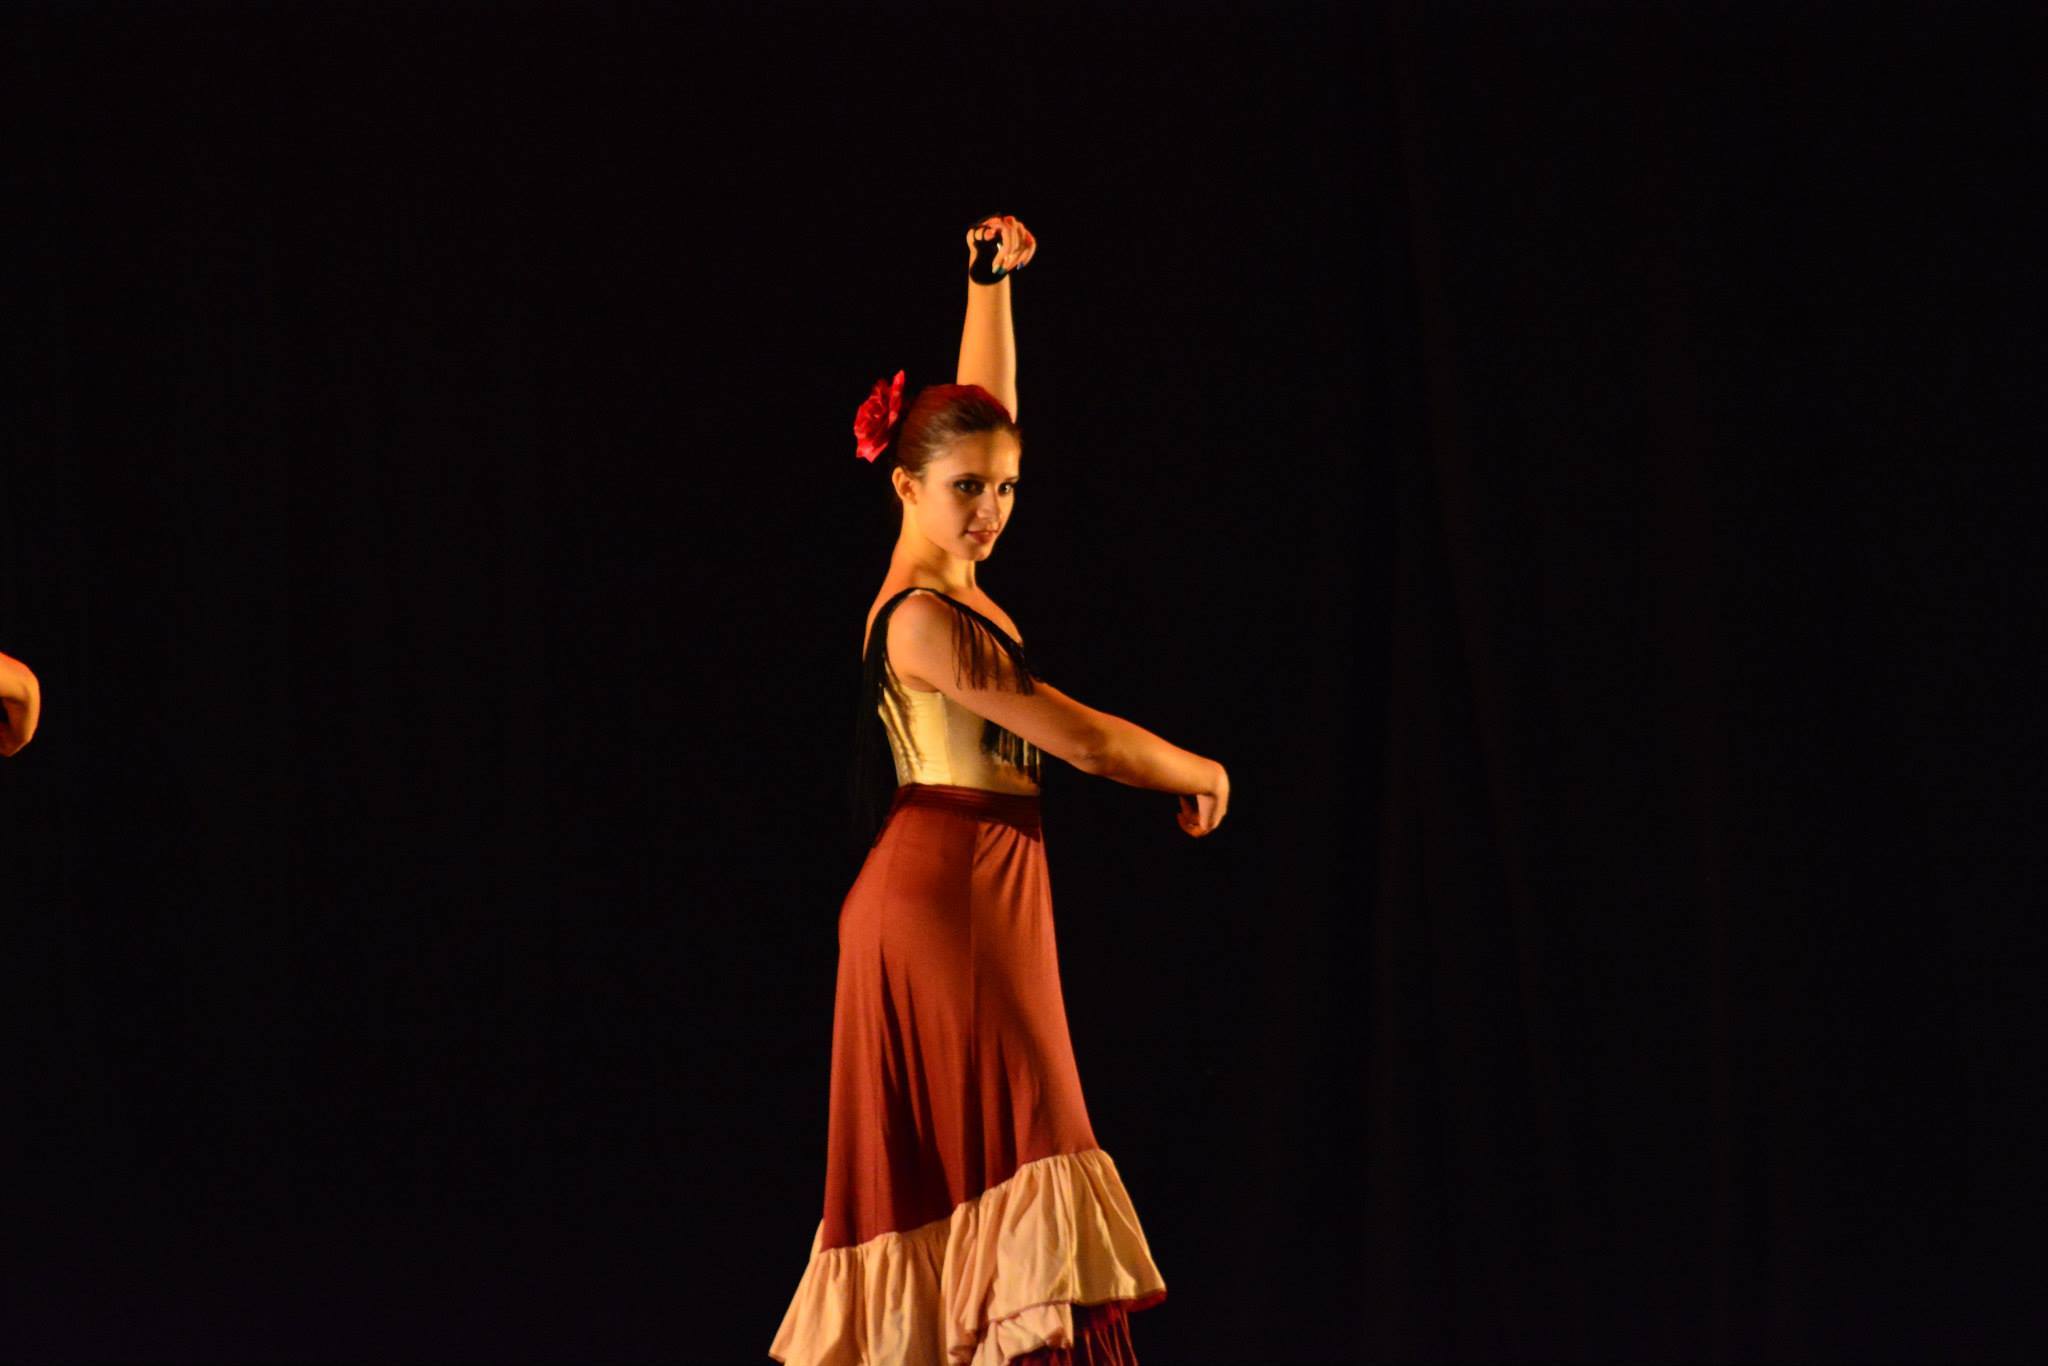 Giordana di Stefano che balla il tango, indossa un abito lungo bordeaux e un fiore rosso in testa